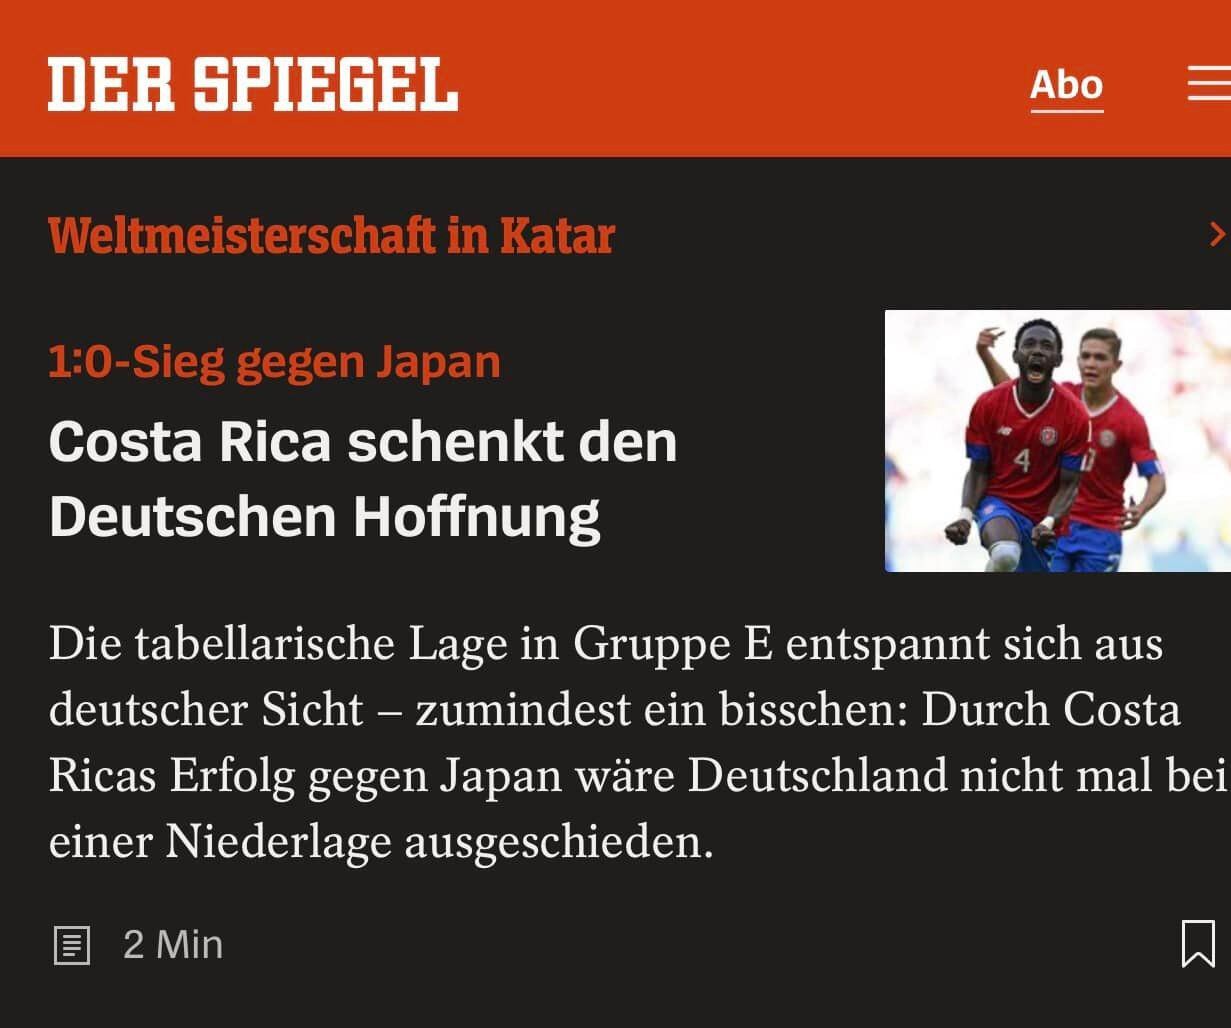 Der Spiegel de Alemania señaló  que el triunfo de Costa Rica le da esperanza a los alemanes.